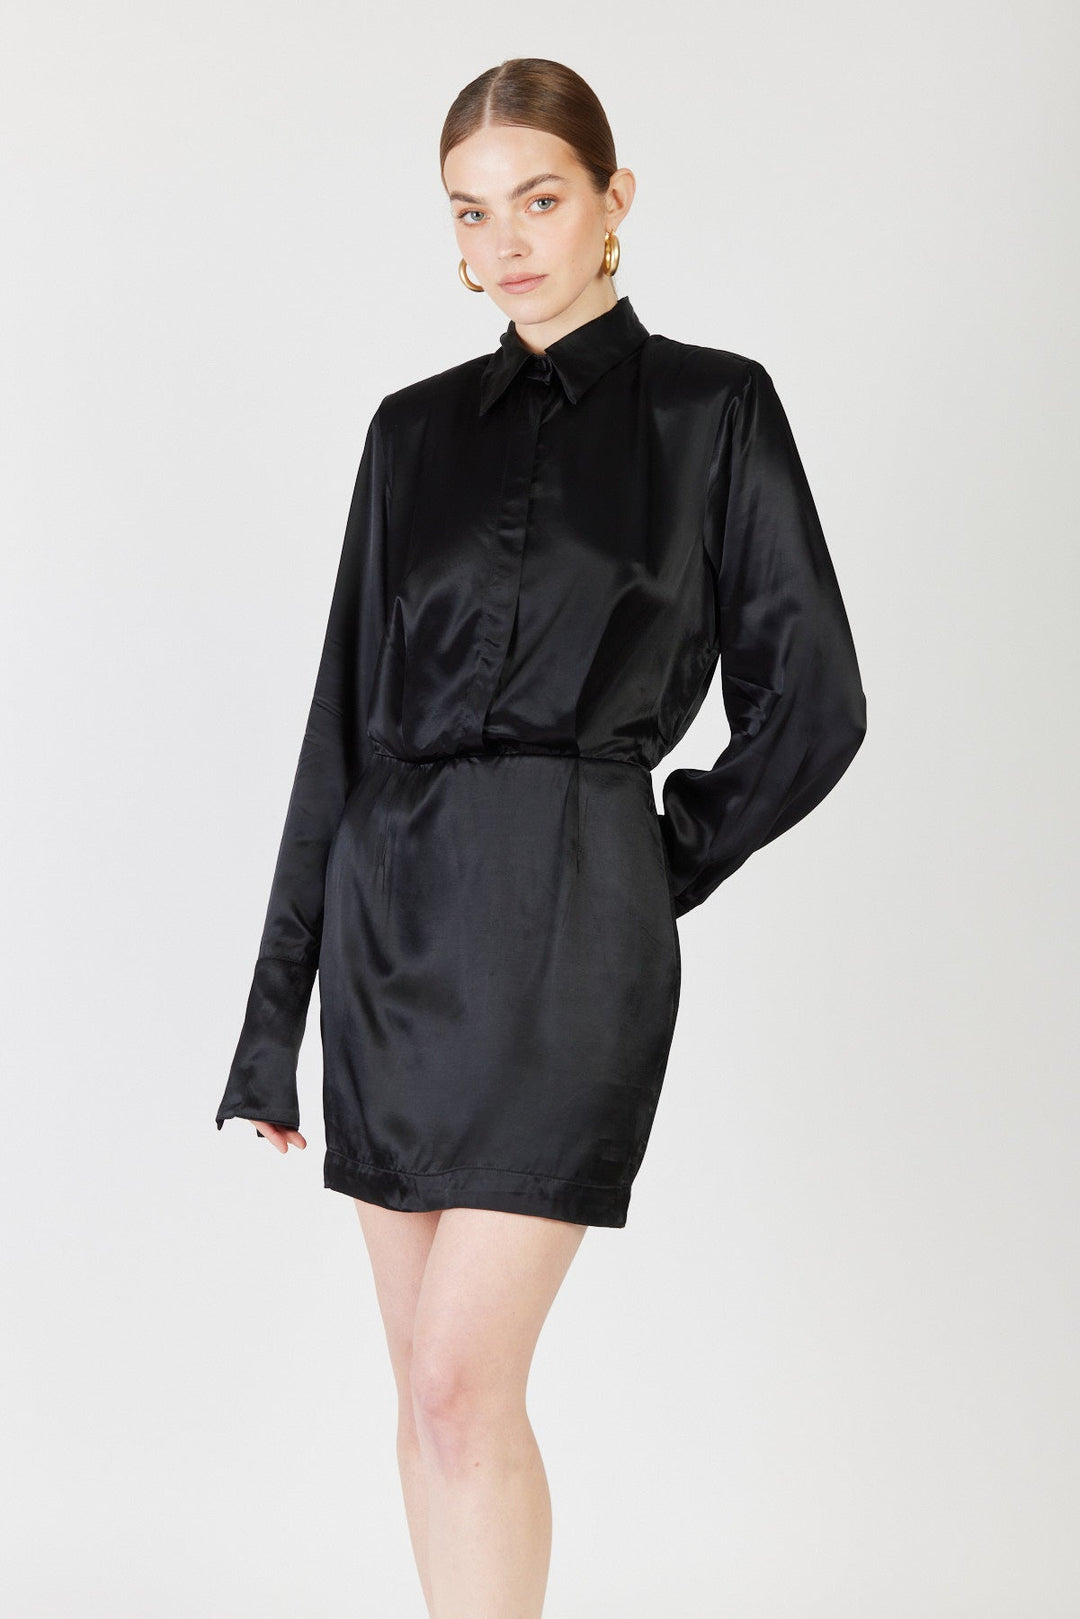 שמלת מיני Nera בצבע שחור - Sabina Musayev